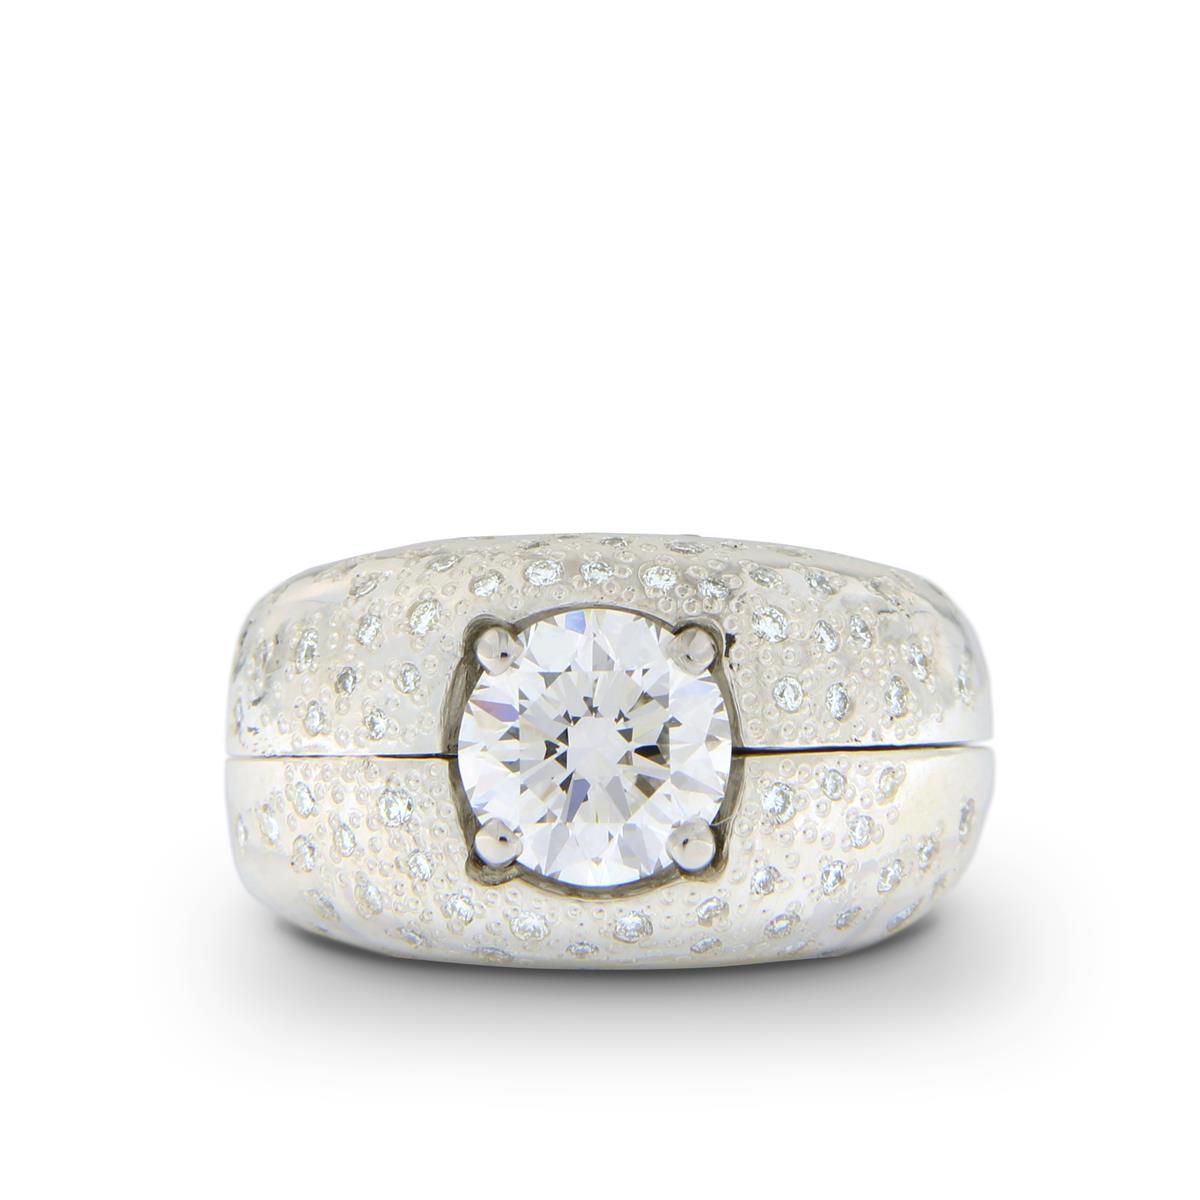 Katie g. Jewellery - Starburst Casing - Ring Casing aus Sterling Silber mit 80 weißen Brillanten